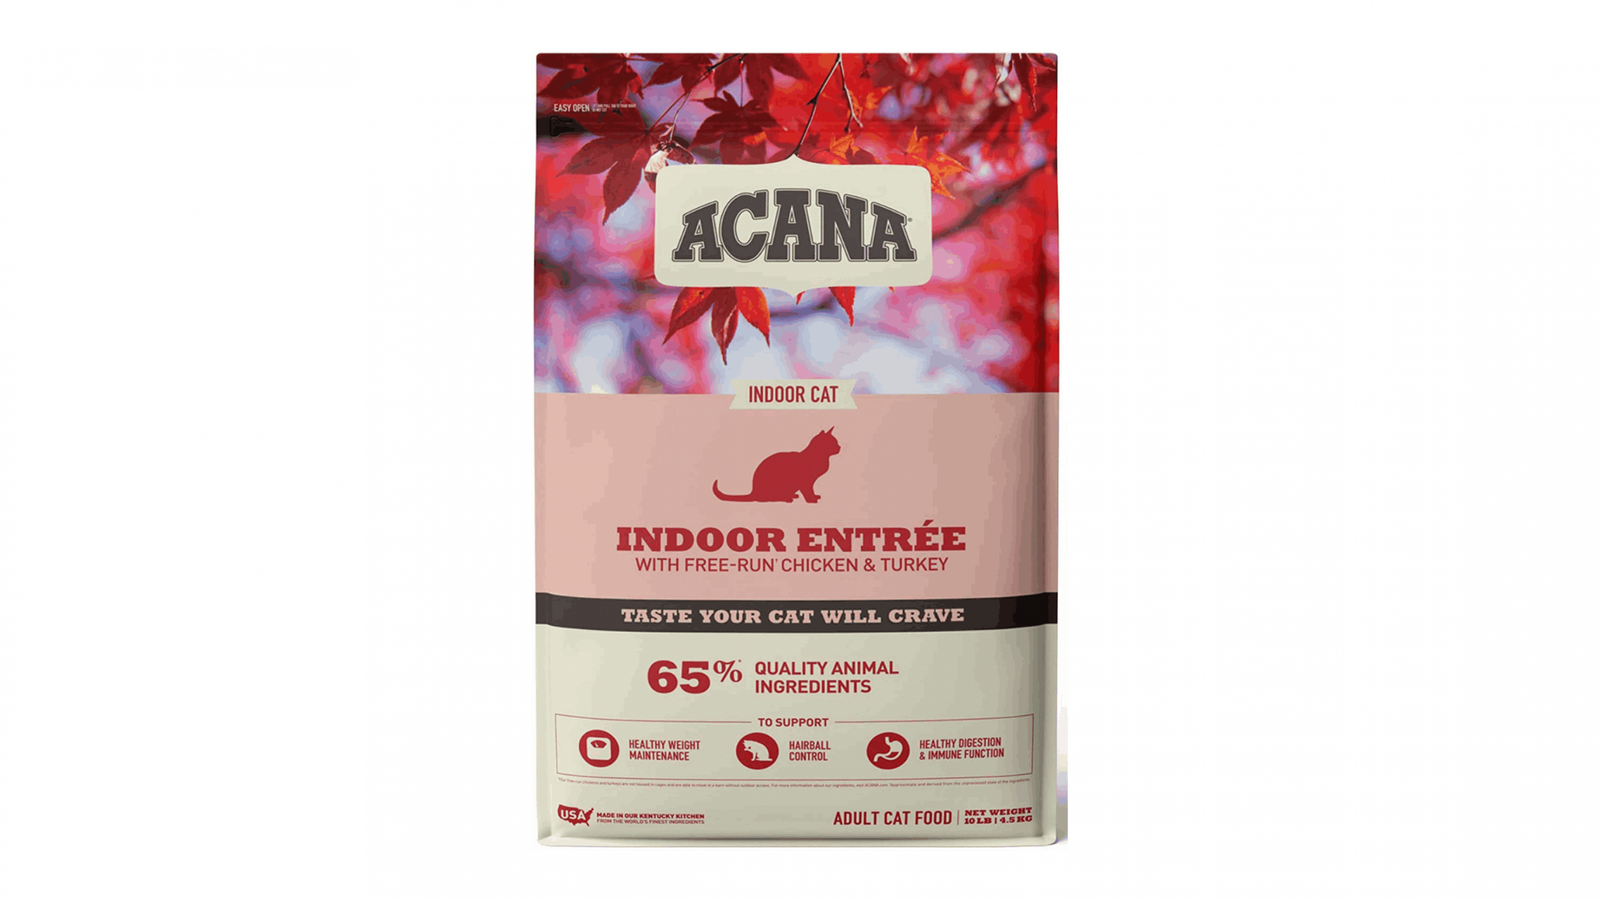 Acana cat food for indoor cats